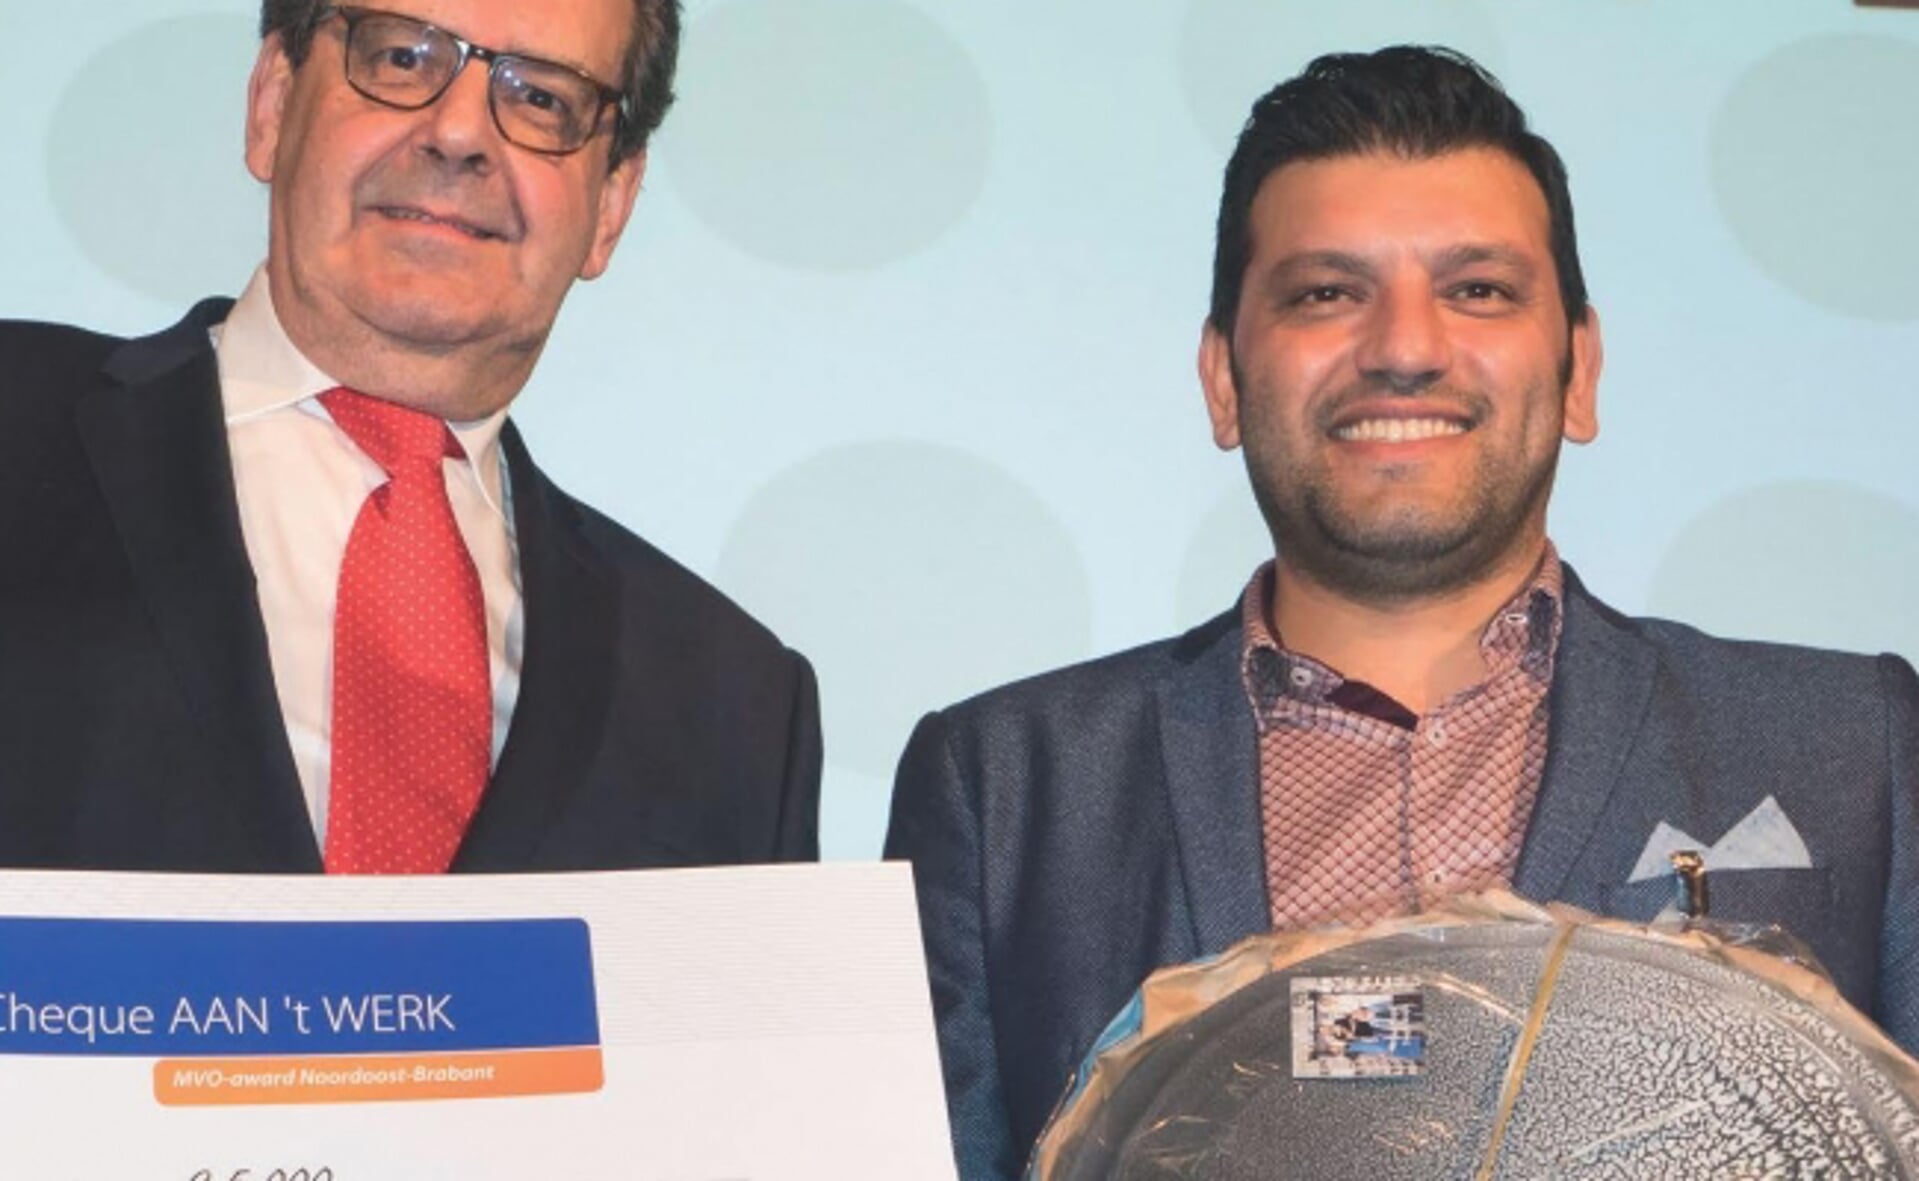 Algemeen directeur Majid Arai van Holland Recycling (rechts) ontving de MVO Award van Aantwerk uit handen van juryvoorzitter Bert Pauli. (Foto: Aantwerk).